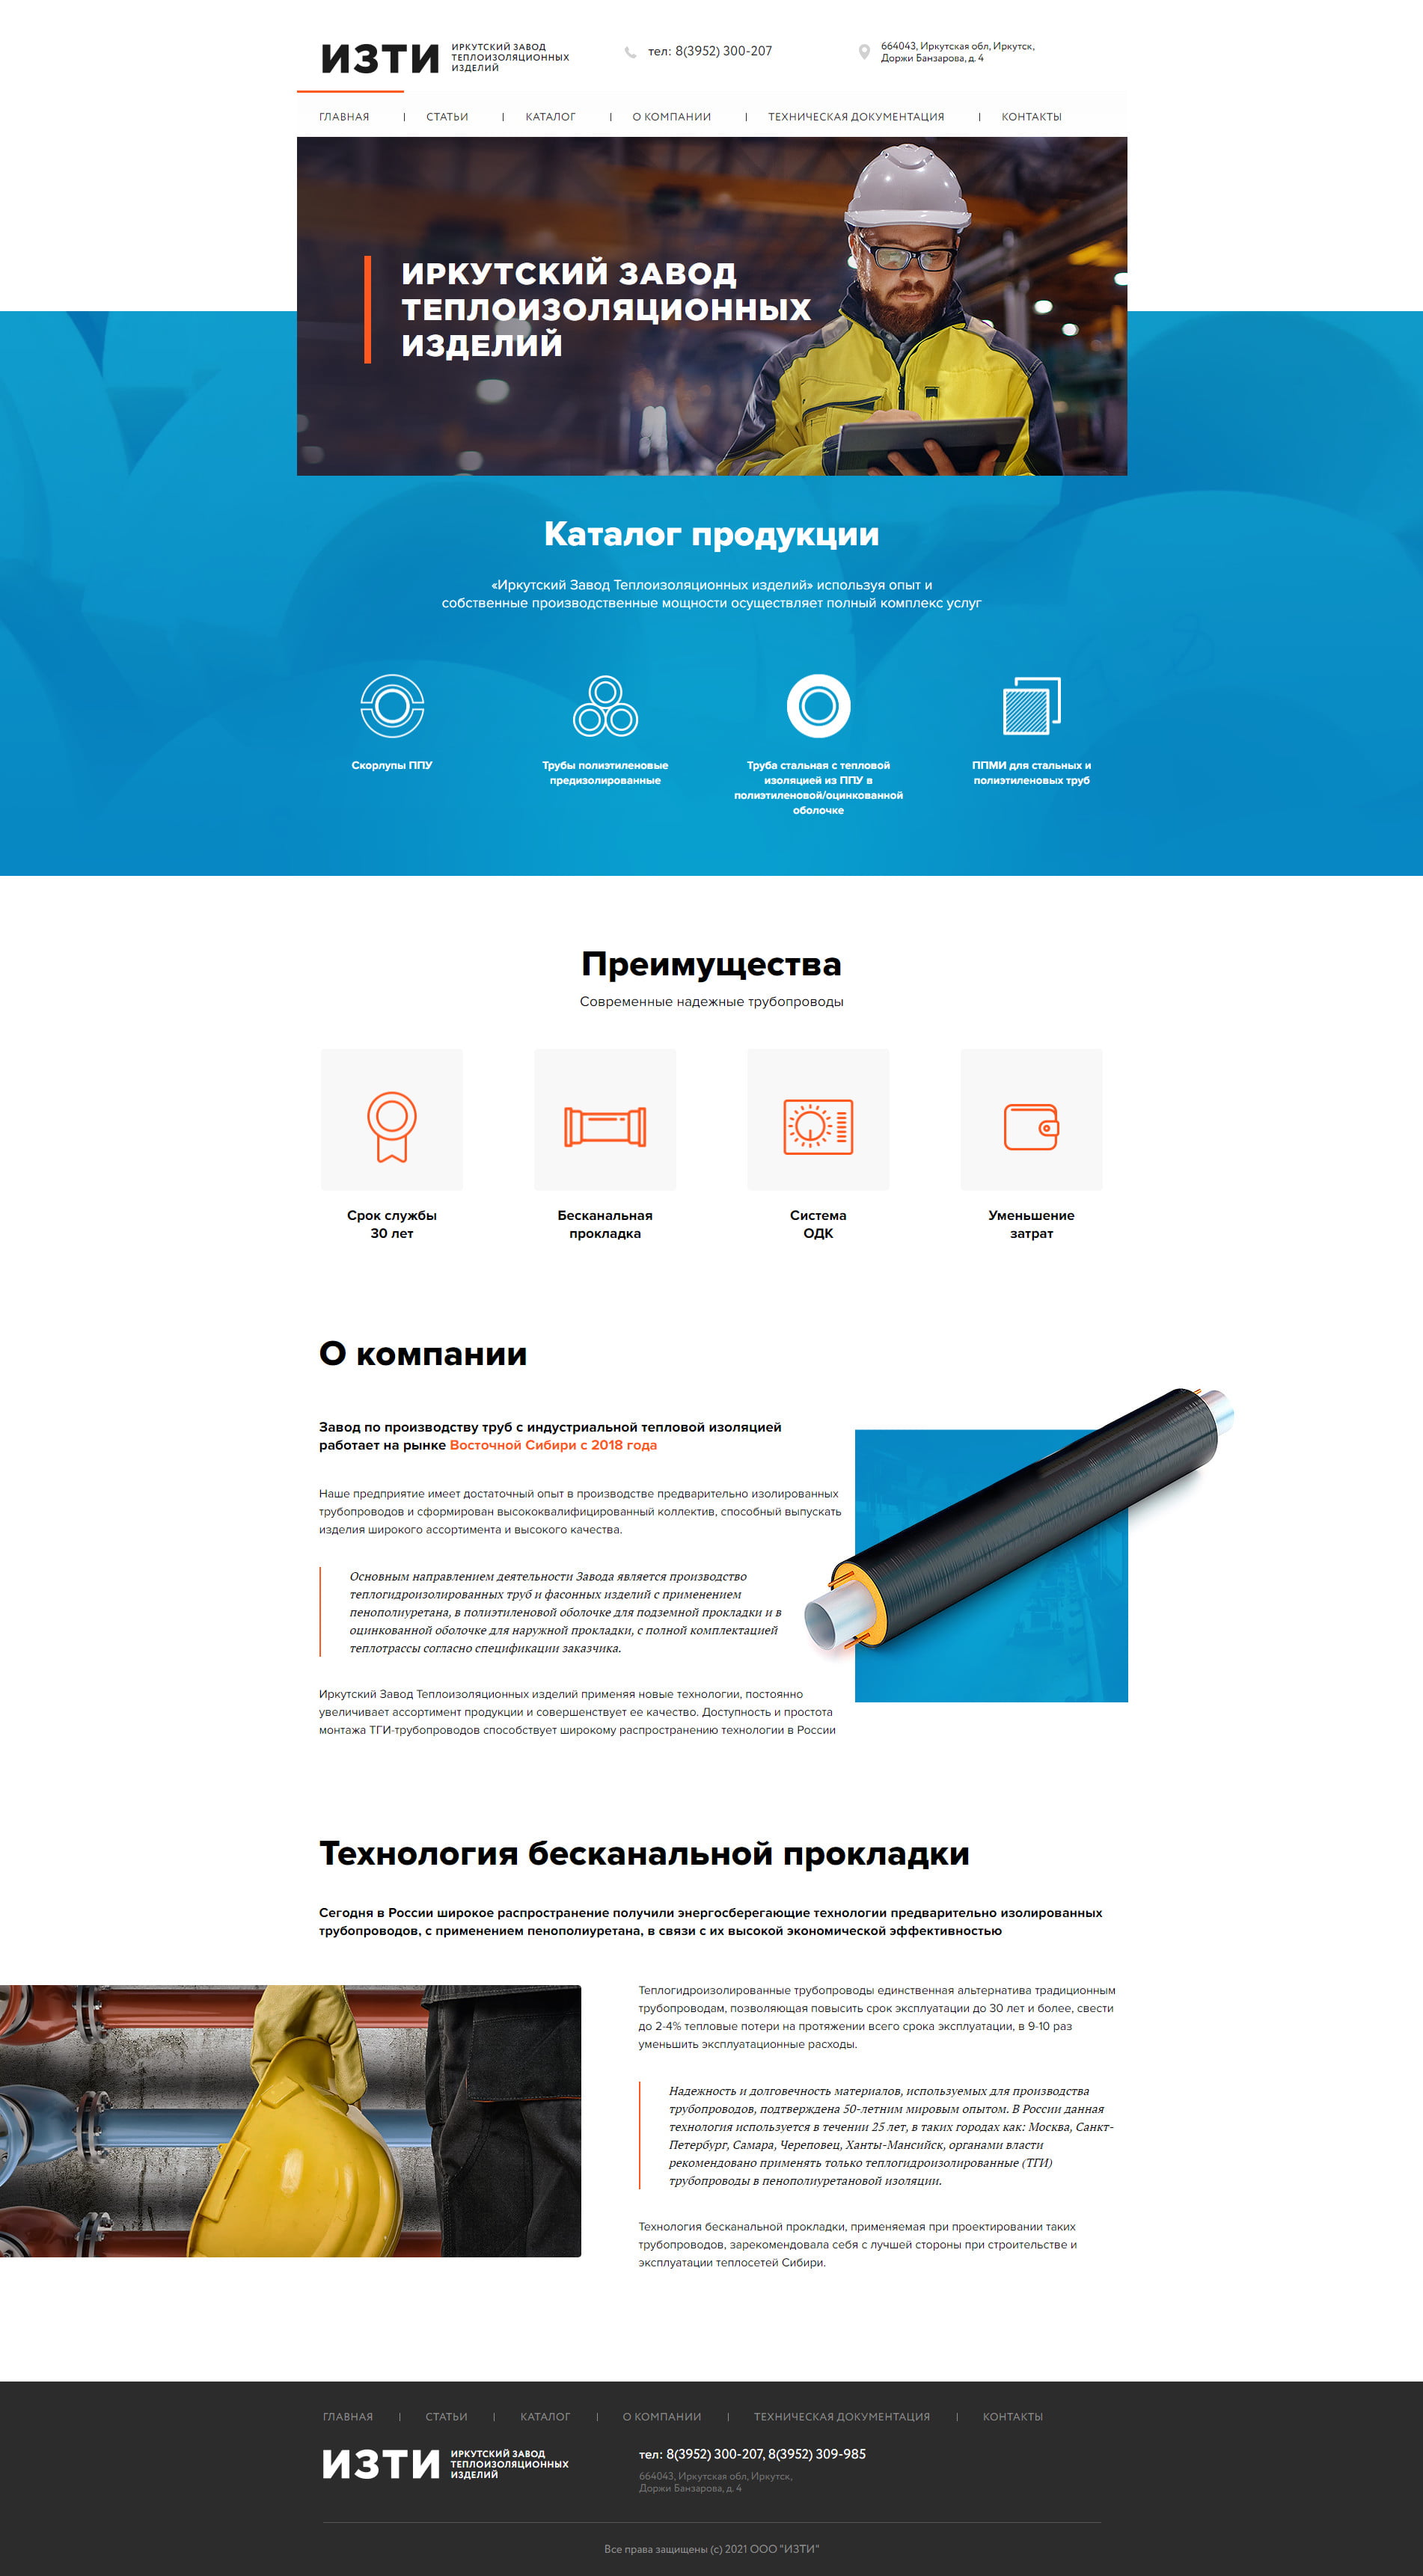 Разработка корпоративного сайта Vzti-irk.ru